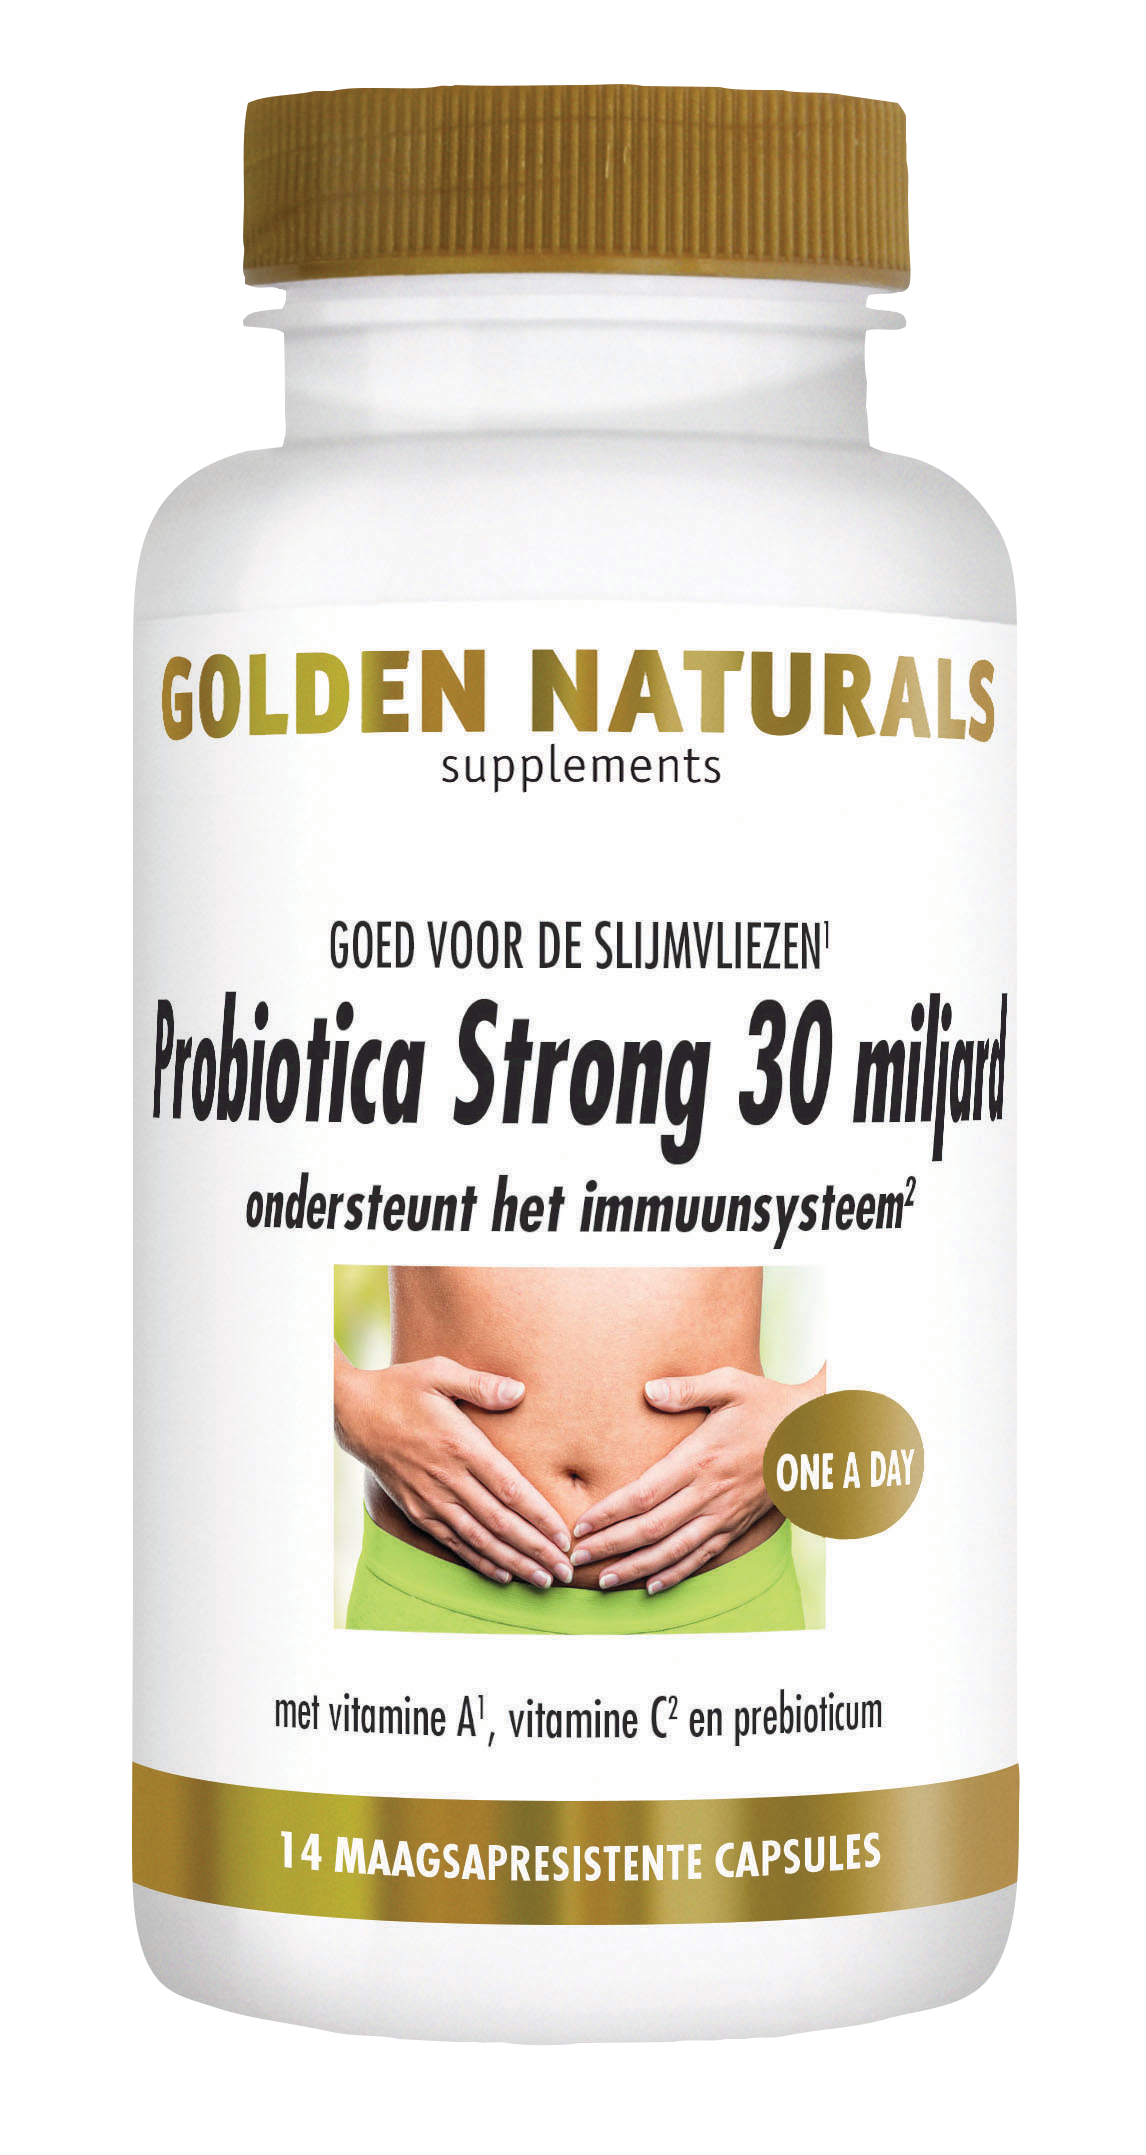 Golden Naturals Probiotica Strong 30 miljard (14 veganistische maagsap